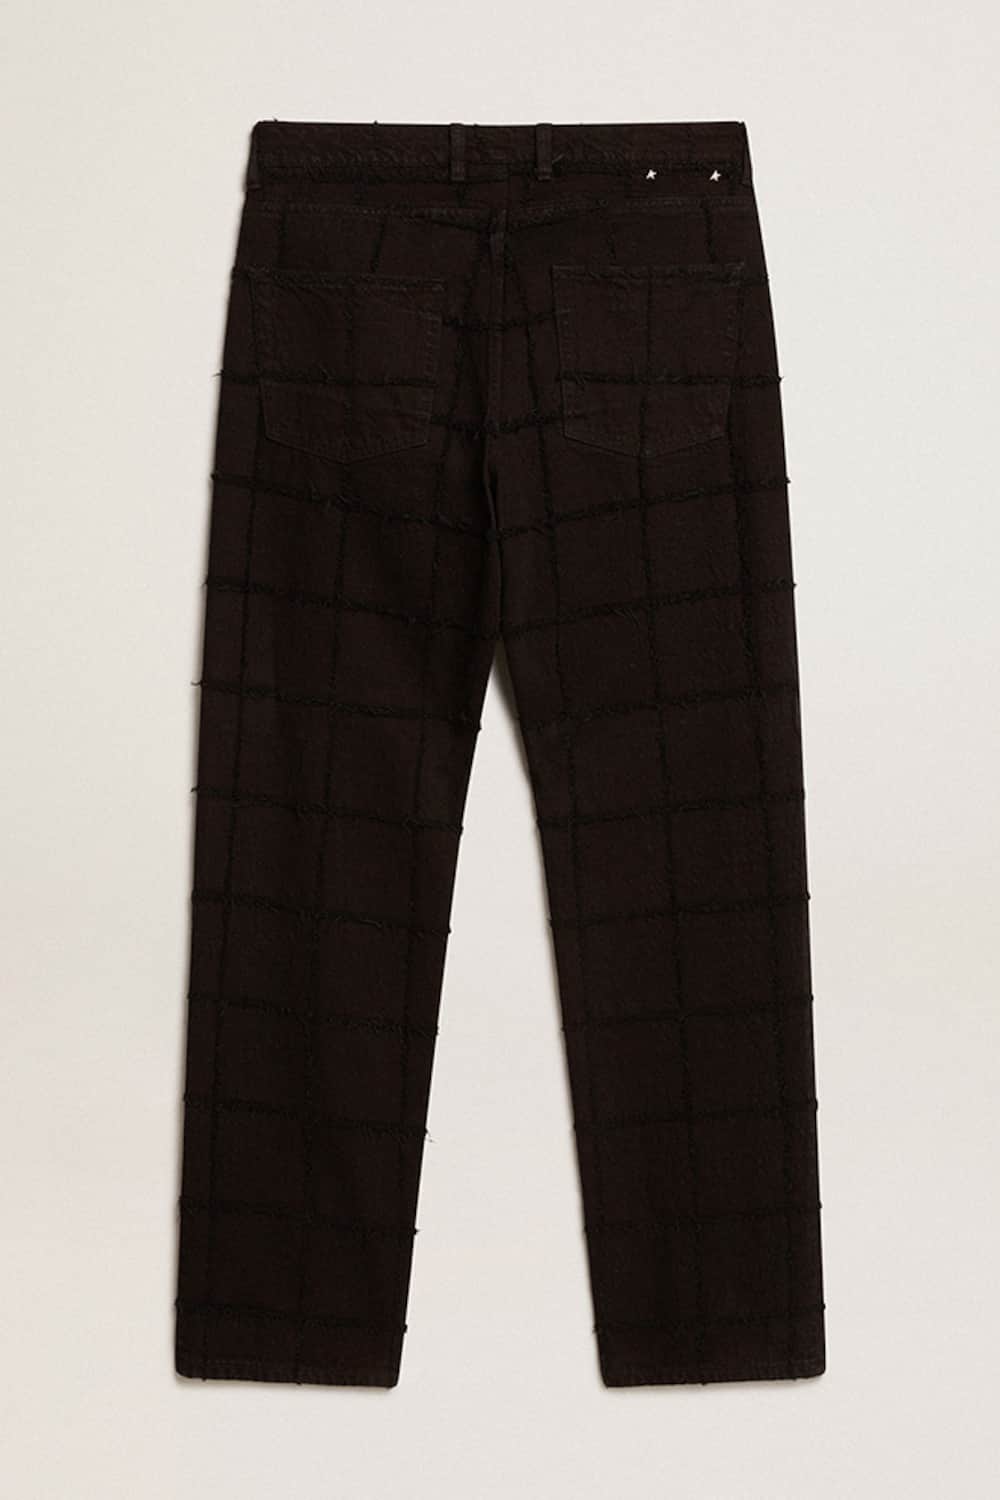 Golden Goose - Pantalone in cotone di colore nero con motivo a quadri effetto 3D in 